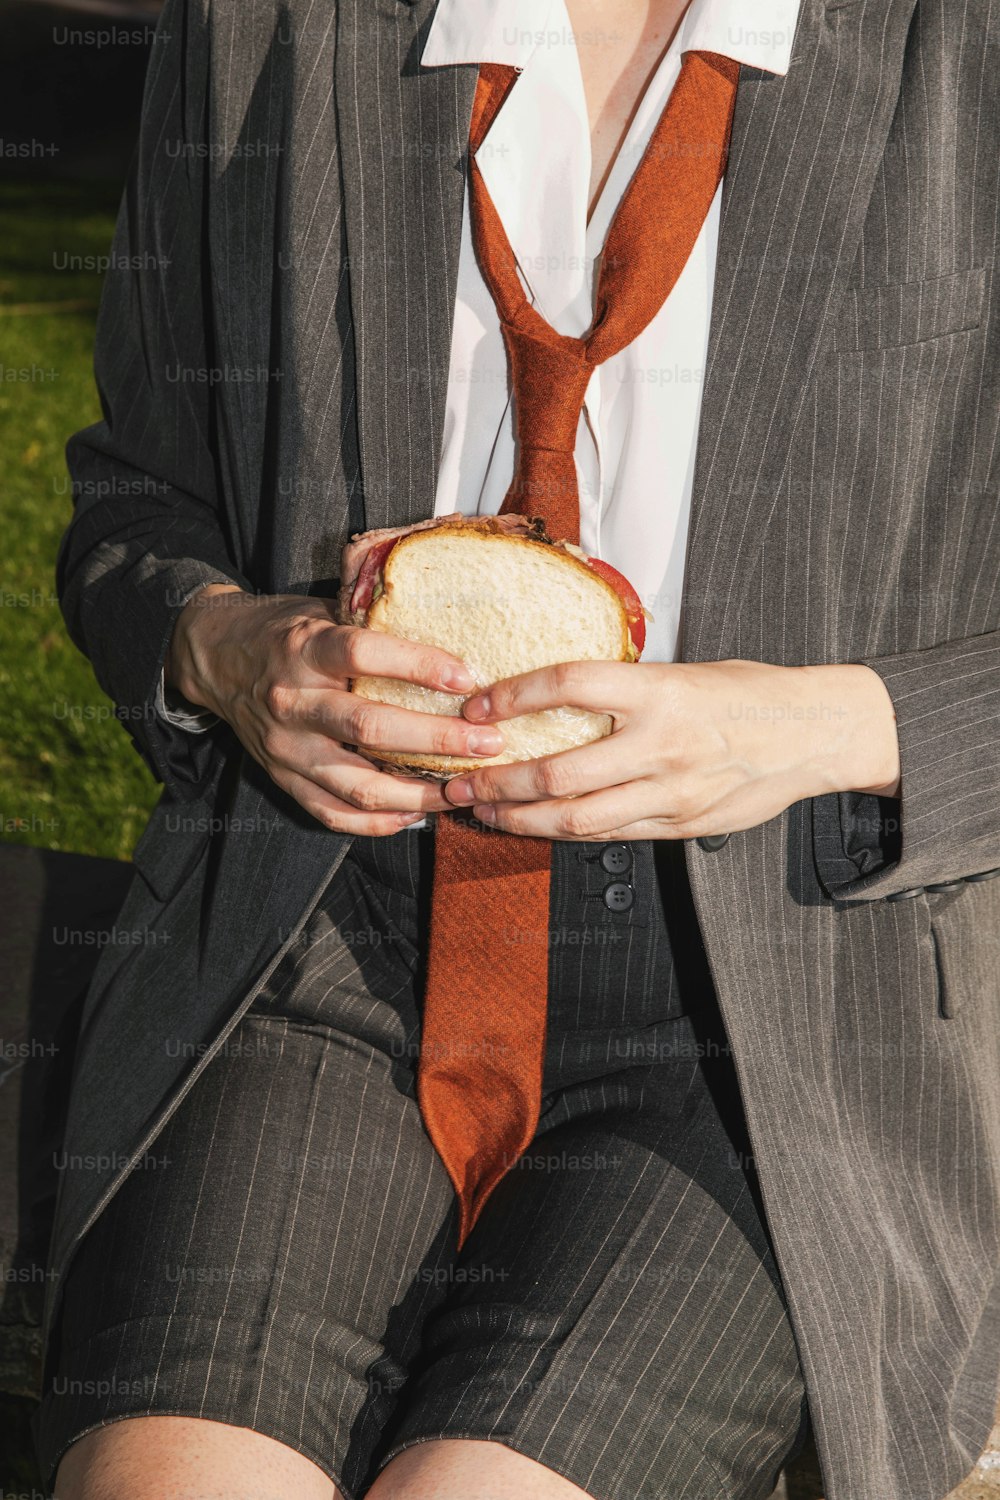 �スーツにネクタイ姿でサンドイッチを手にした女性